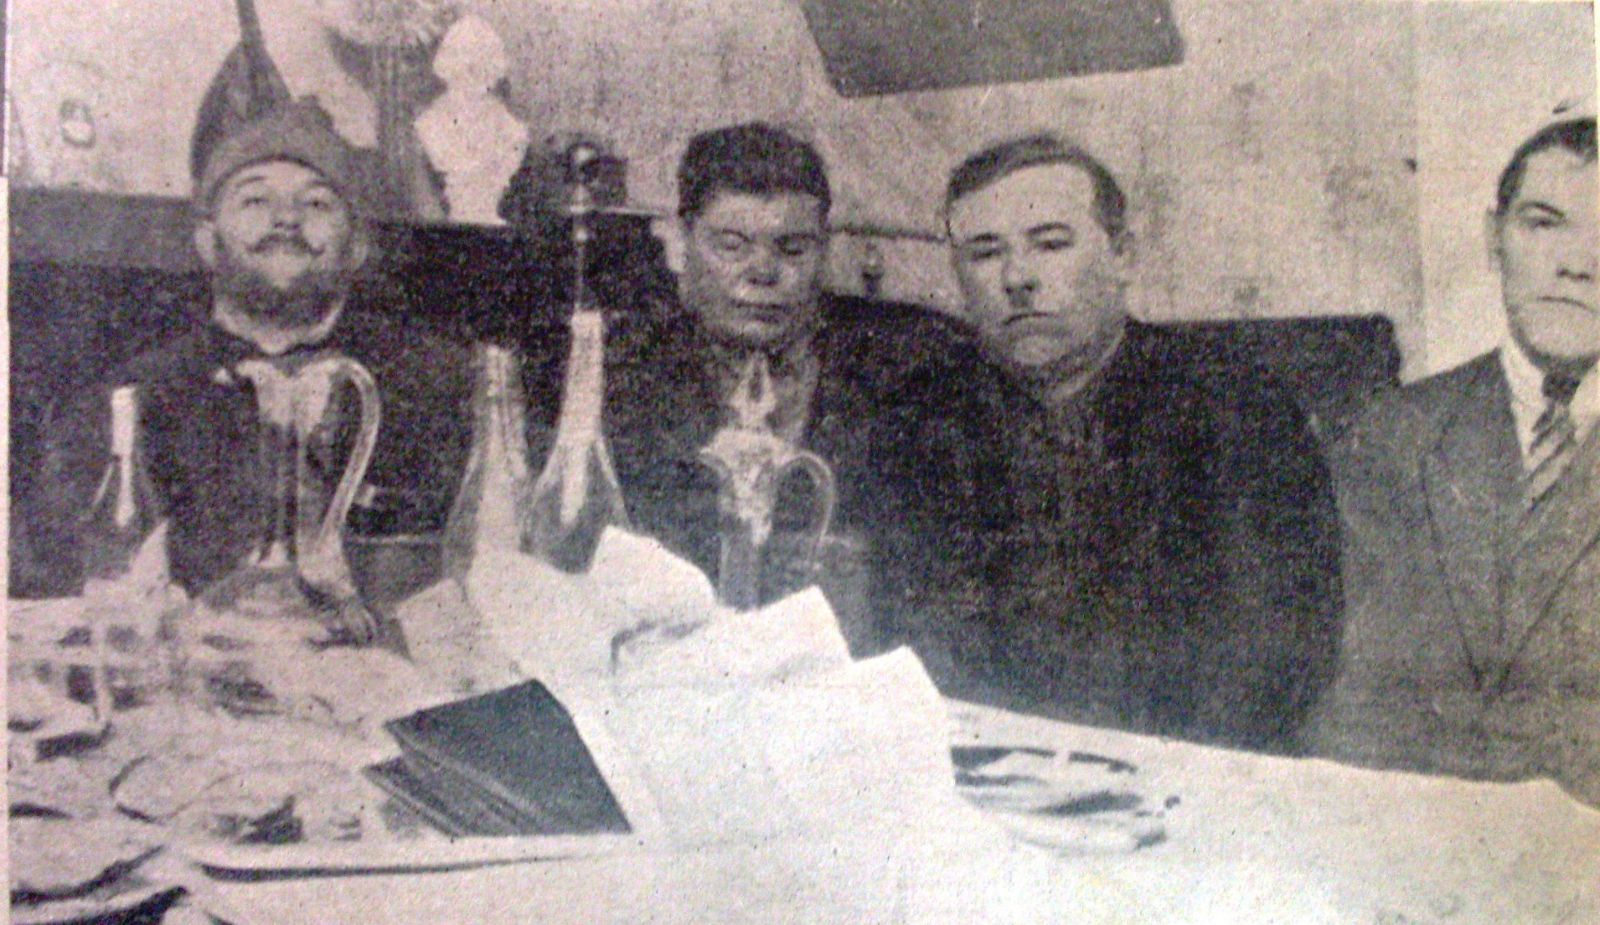 Друге ліворуч — обличчя радянського правосуддя. Суддю Сілакова взяли під час пиятики